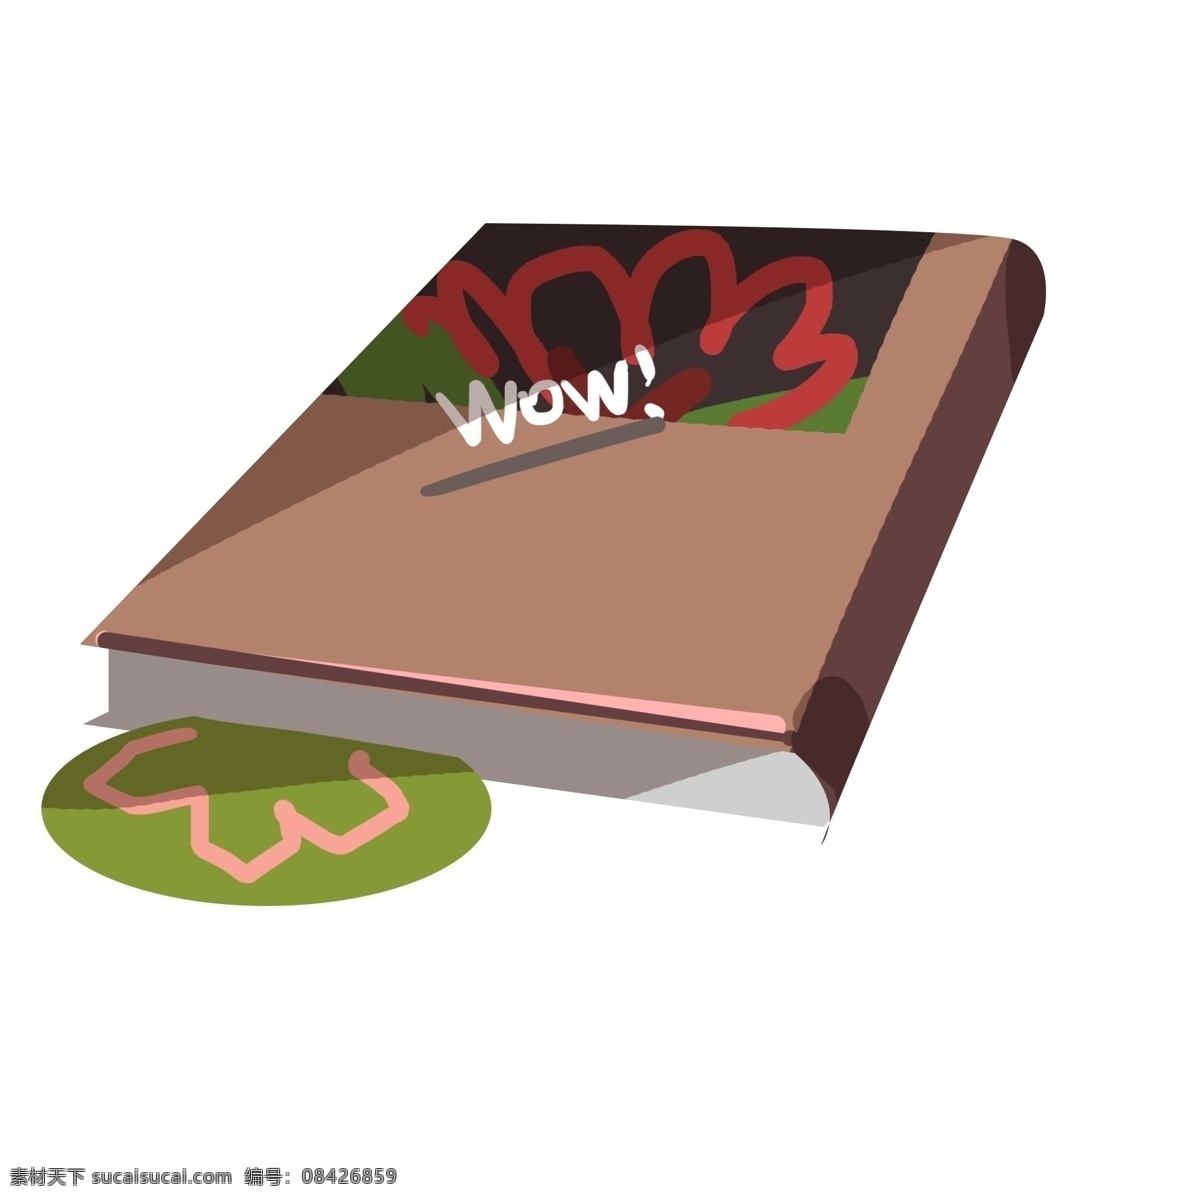 夹 花朵 书签 书 夹着书签的书 绿色书签 咖啡色书皮书 红色花朵 厚厚的书本 书本插画 精装书本